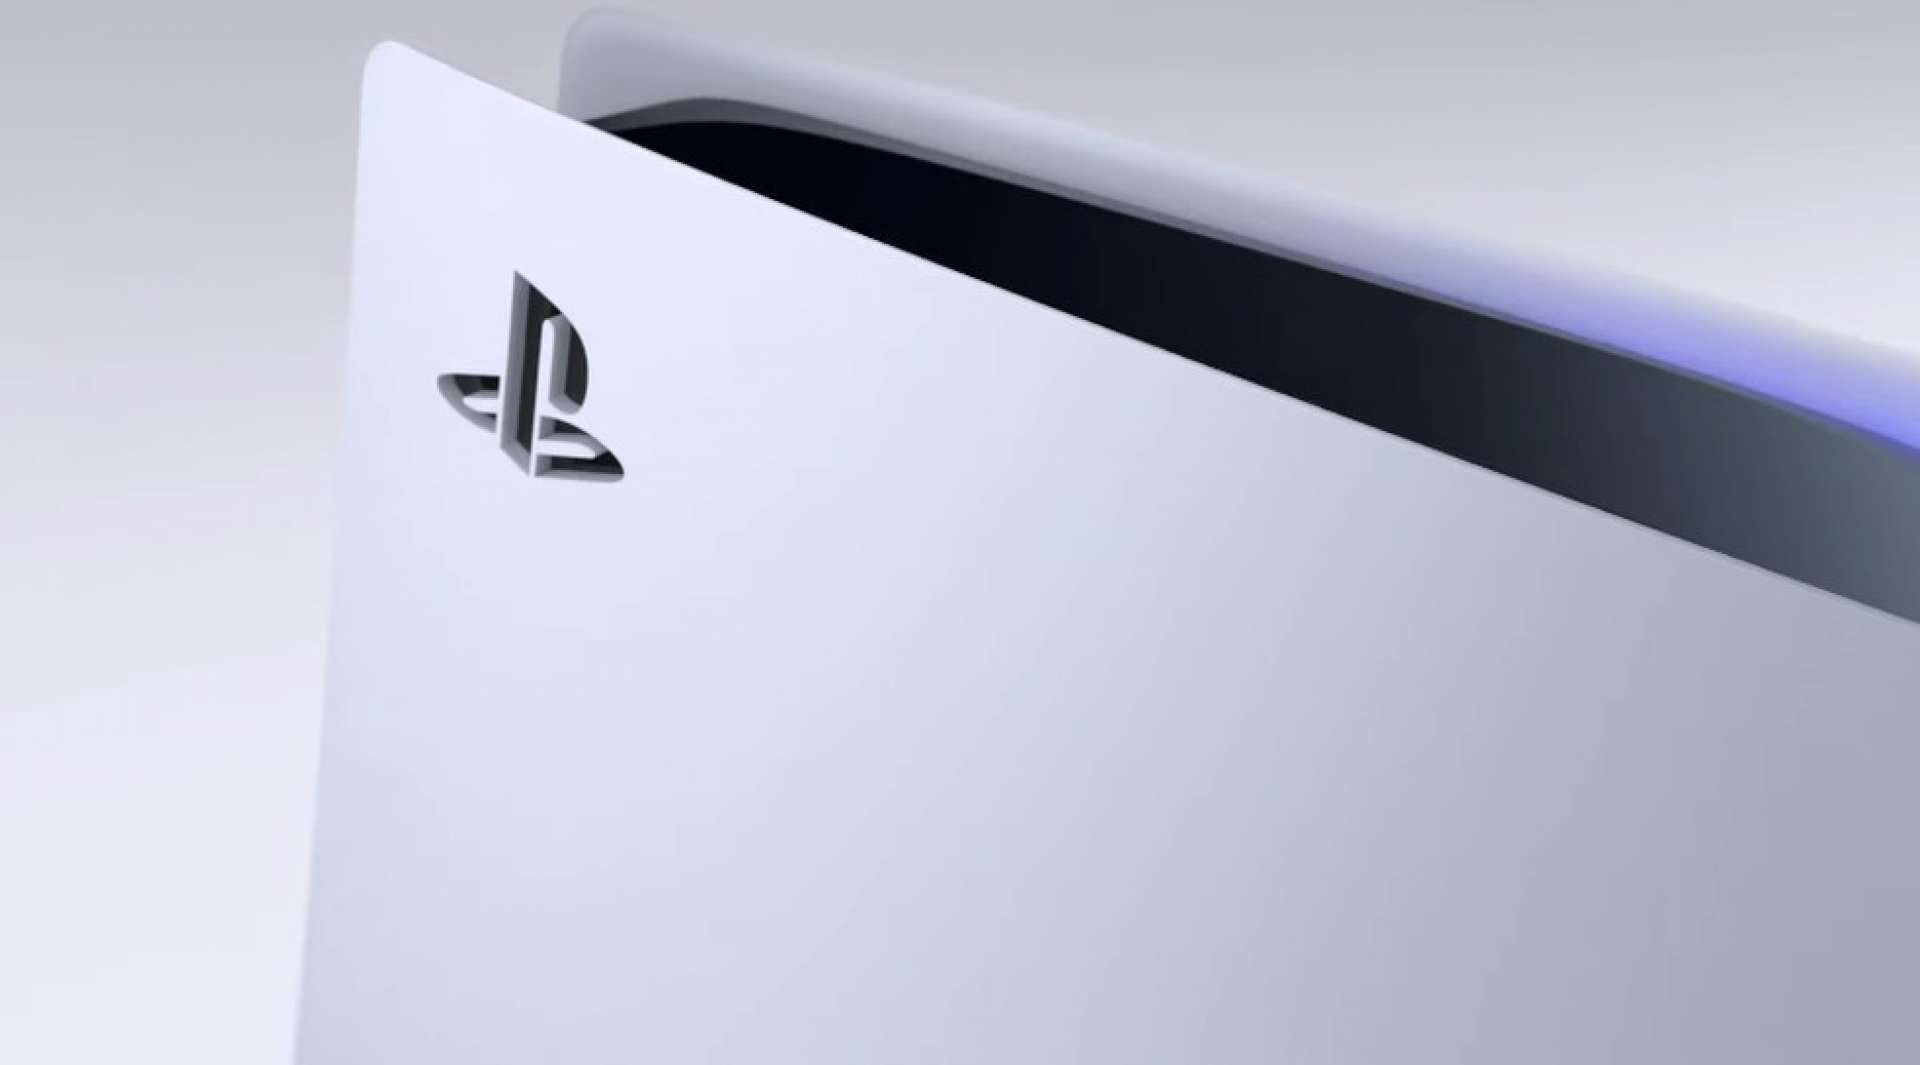 PS5: Sony pretende lançar 10 jogos multiplayer até 2026 - Olhar